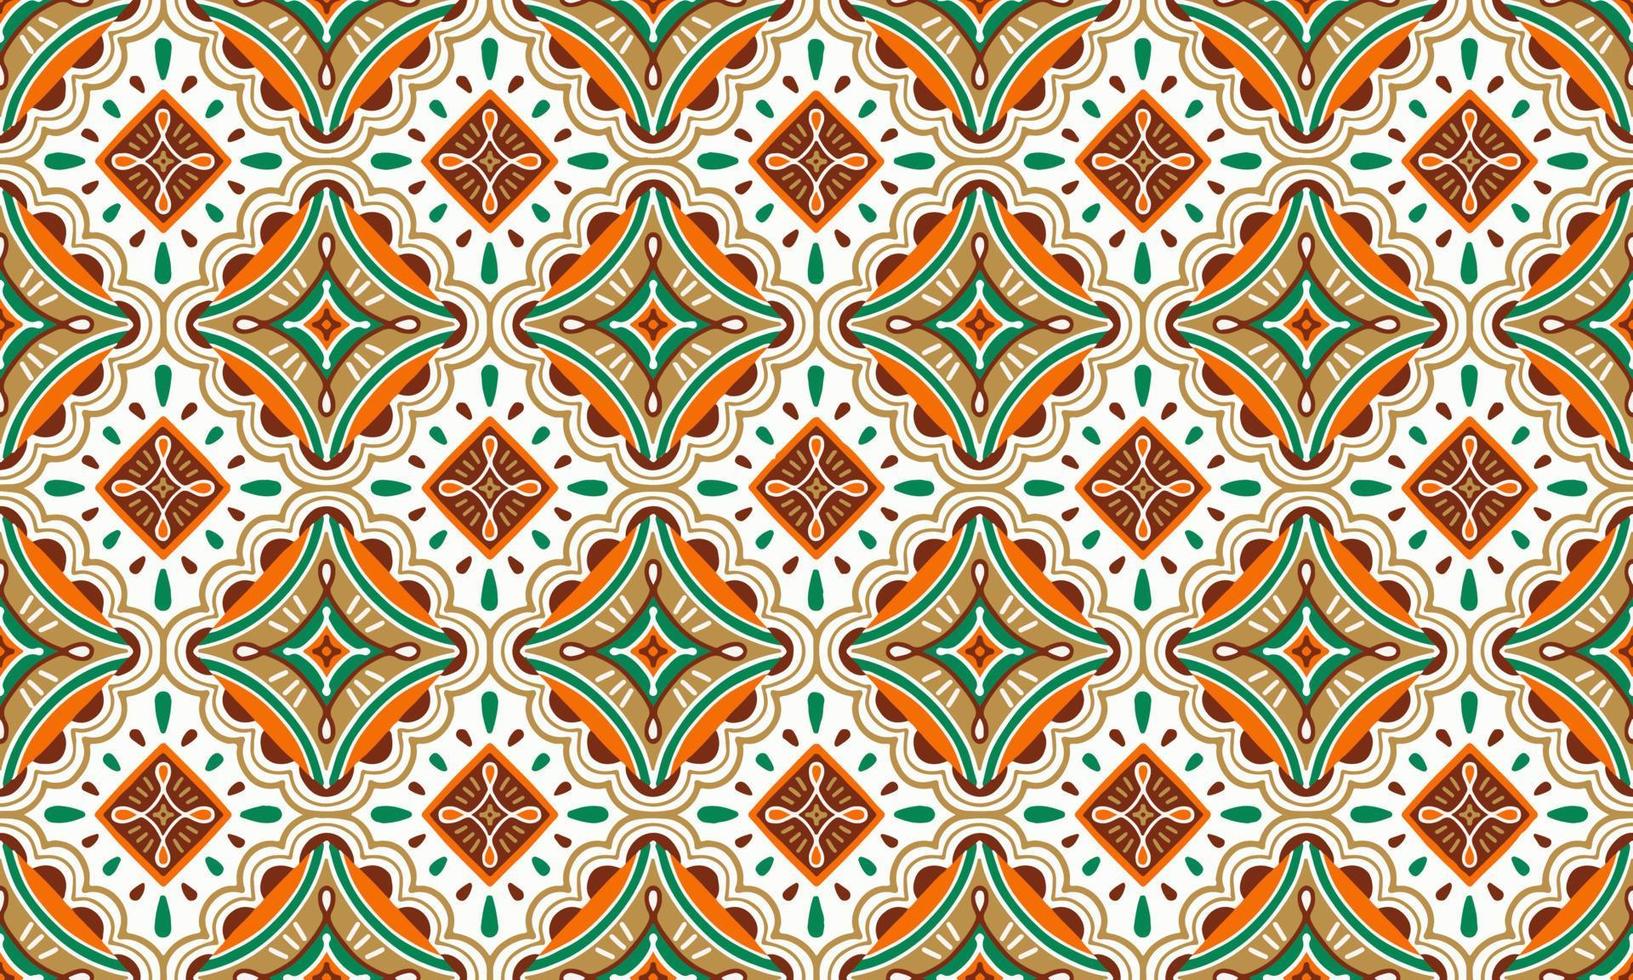 étnico resumen antecedentes linda verde naranja marrón geométrico tribal ikat gente motivo Arábica oriental nativo modelo tradicional diseño alfombra fondo de pantalla ropa tela envase impresión batik gente vector